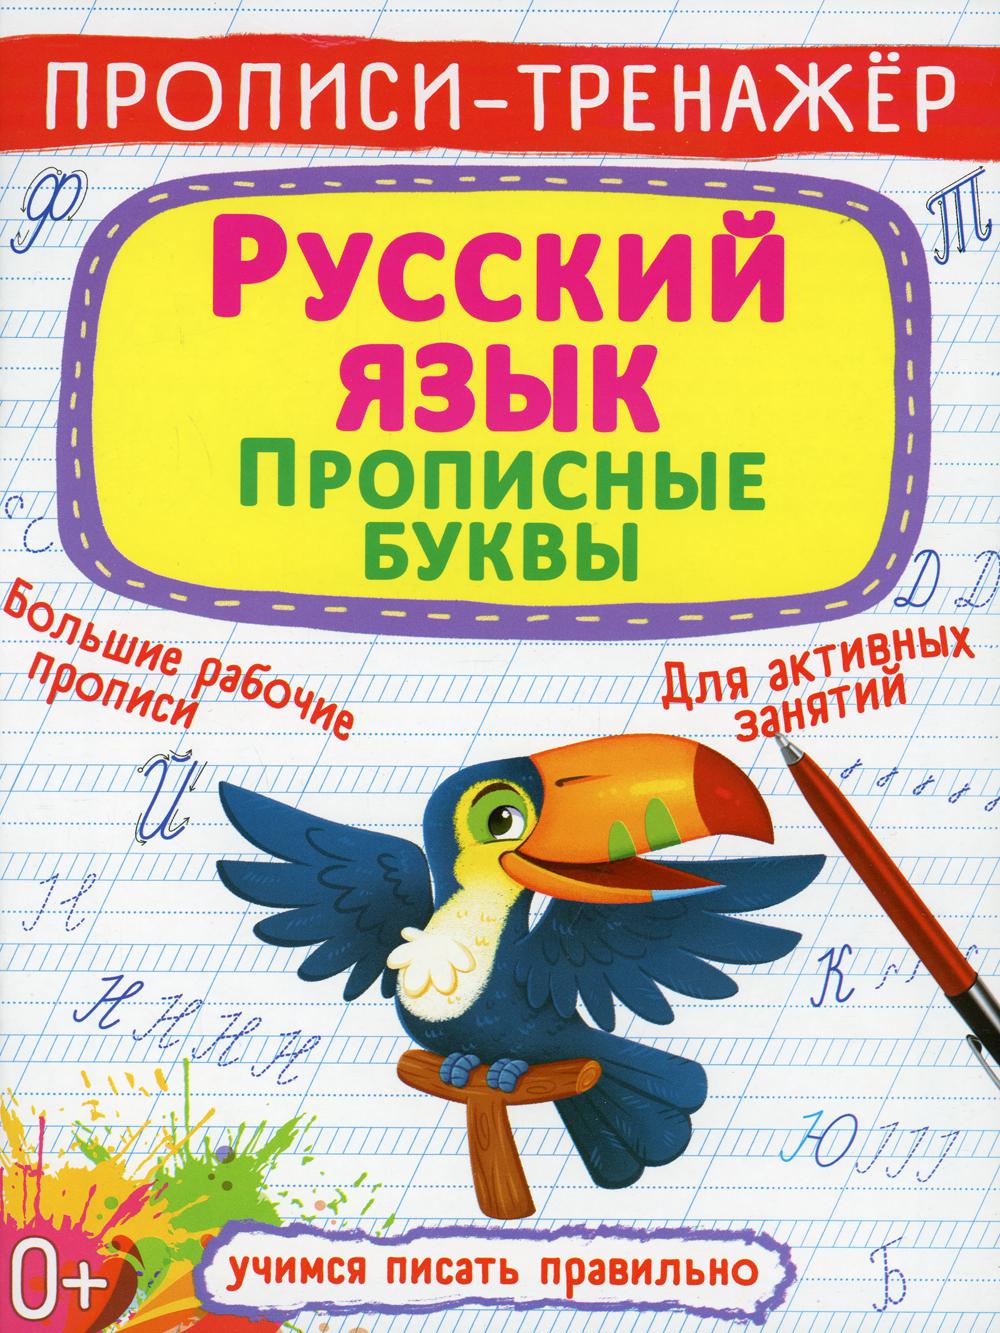 фото Книга прописи-тренажер. русский язык. прописные буквы кристалл бук